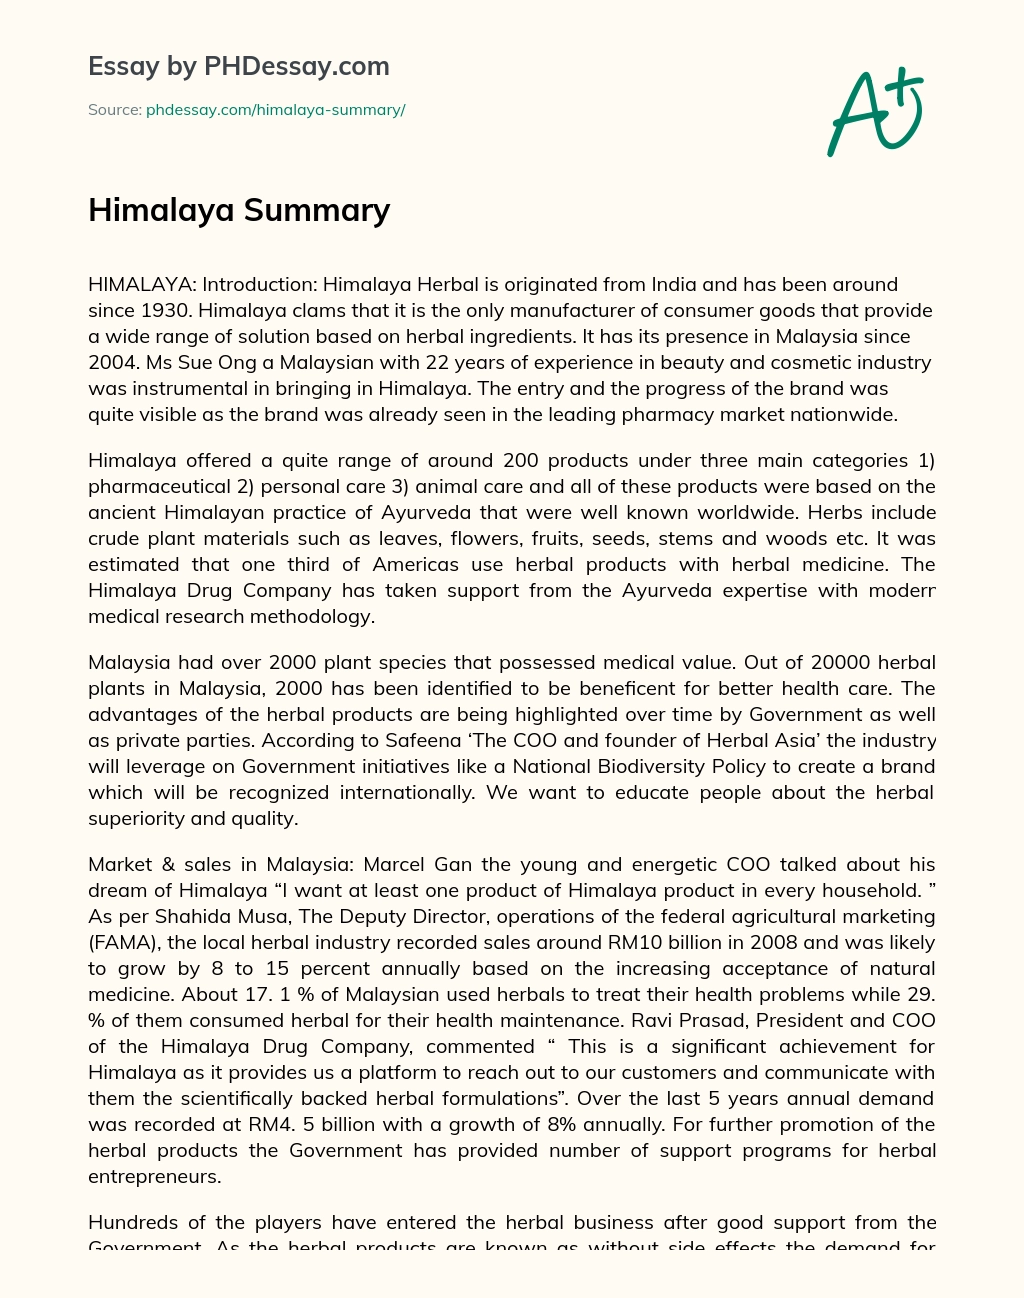 Himalaya Summary essay